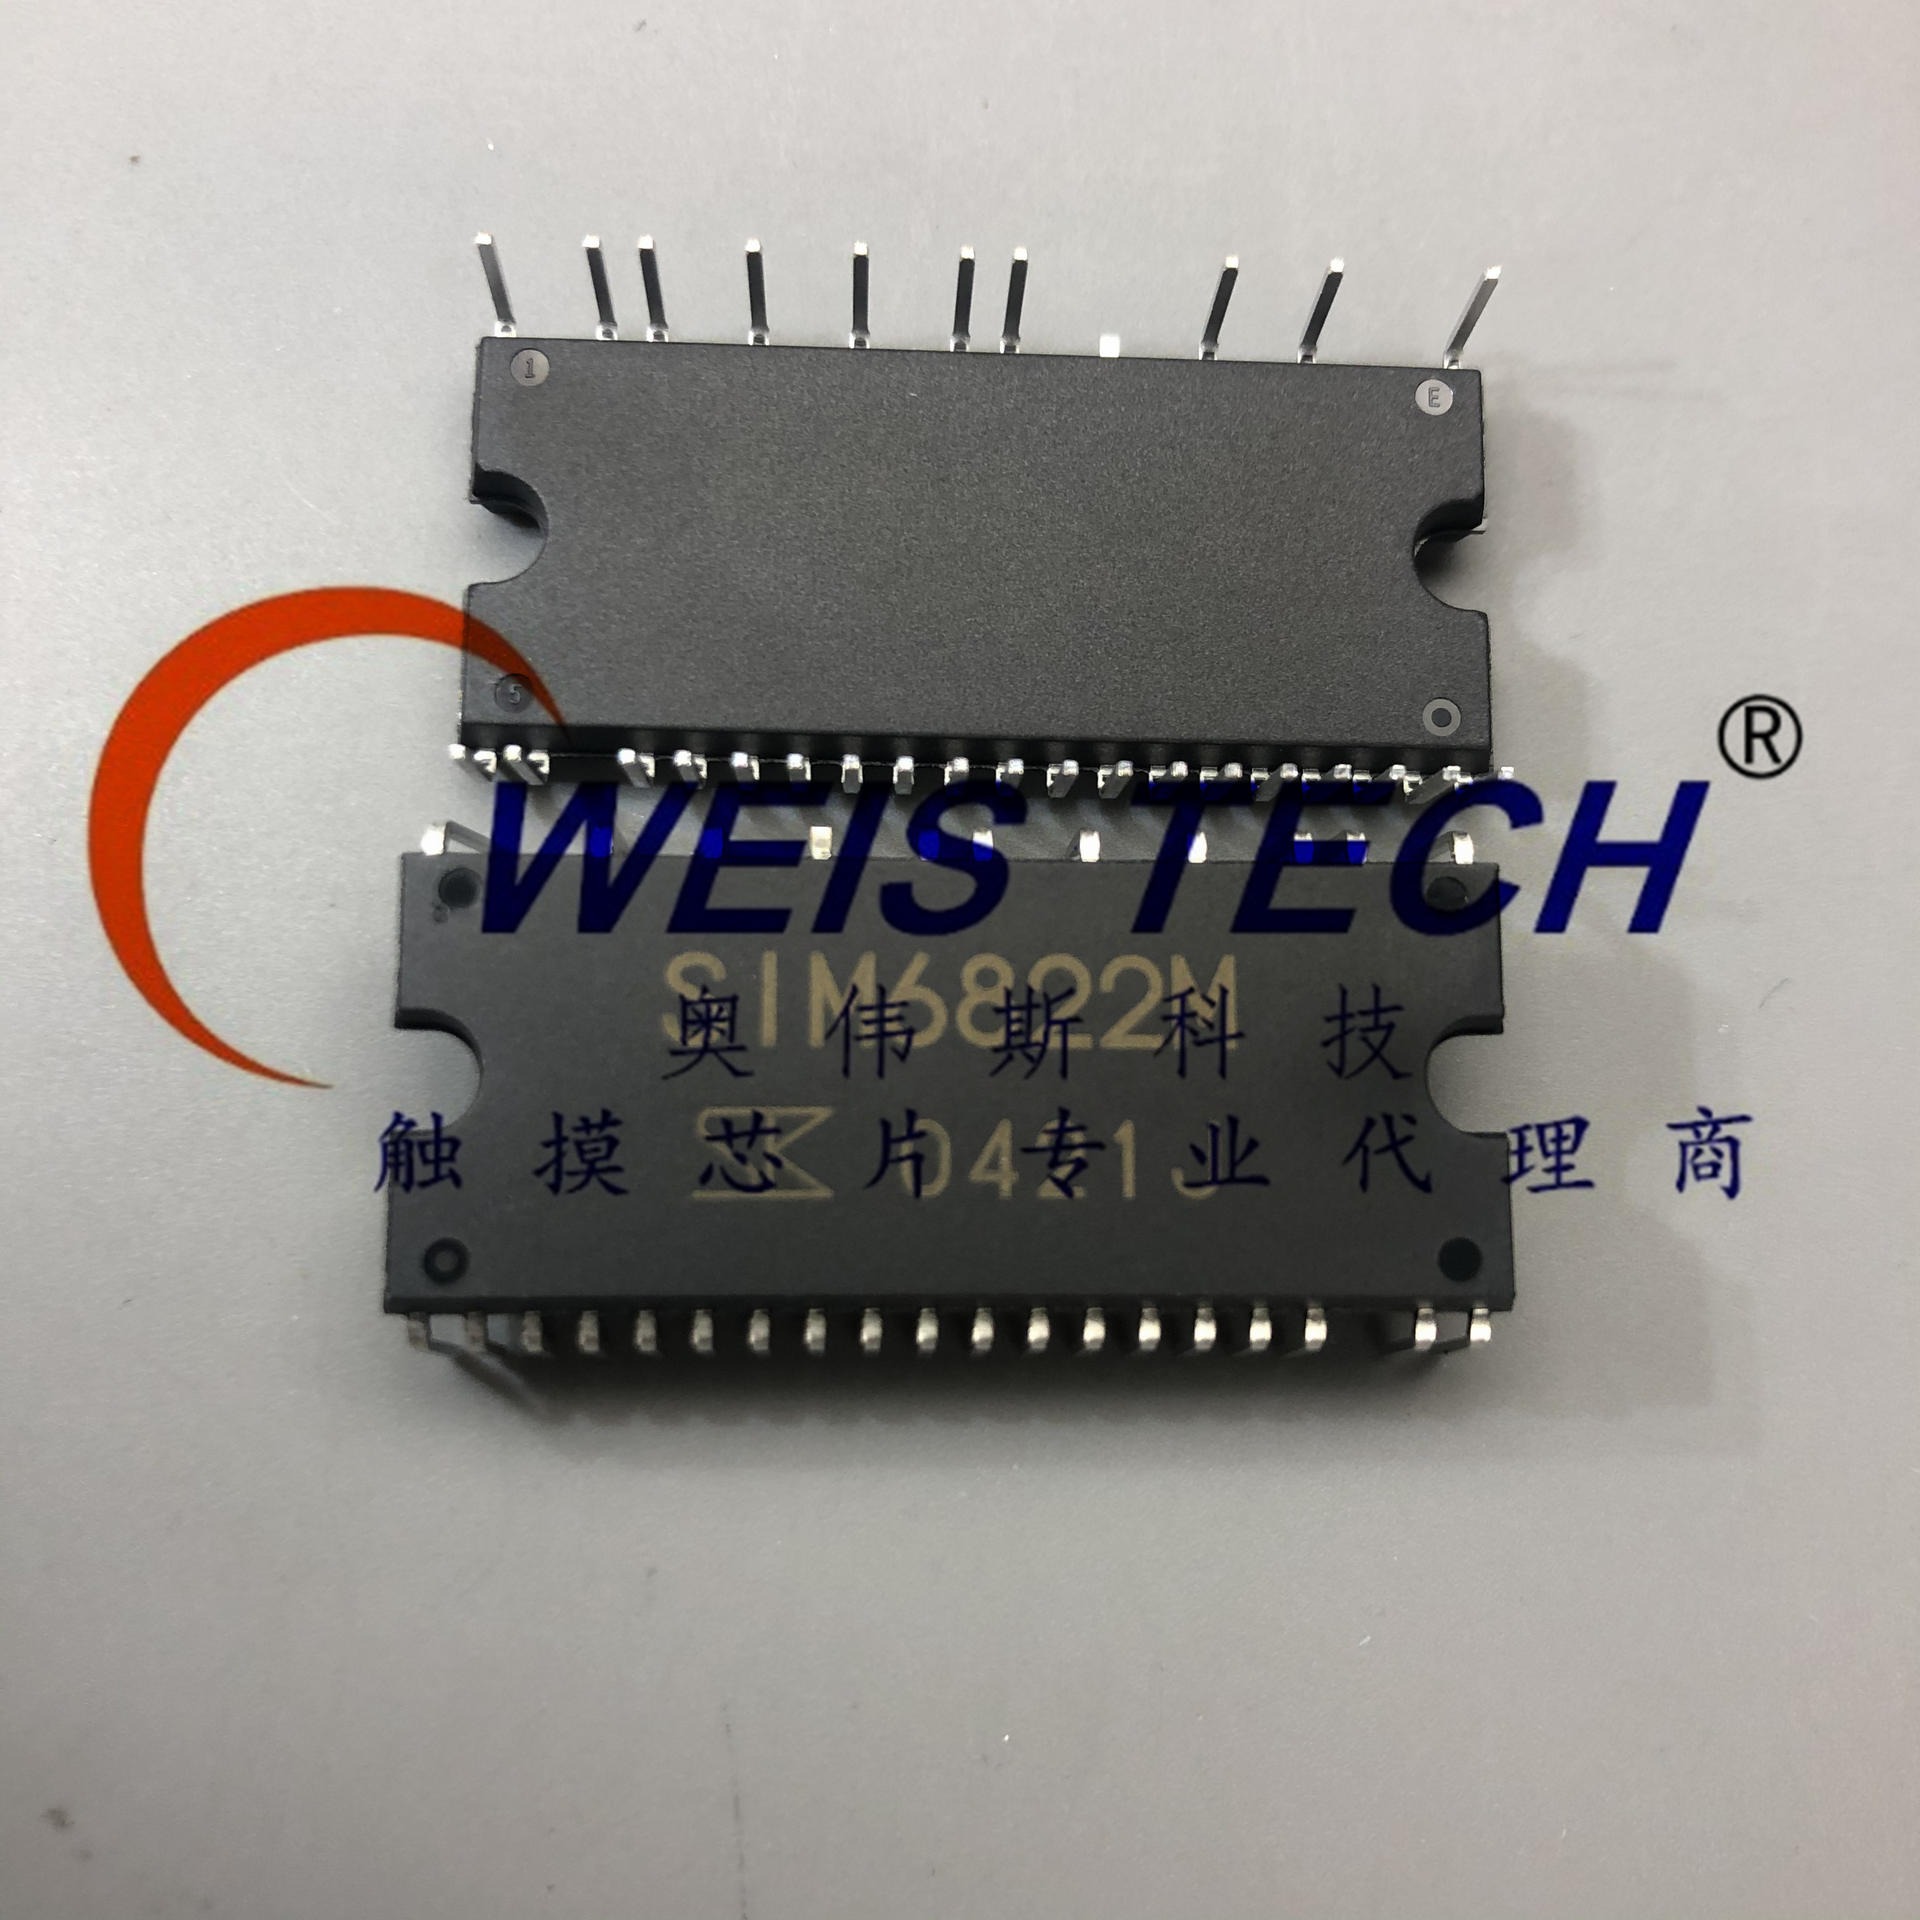 SIM6822M   电源管理芯片  触摸芯片 单片机  放算IC专业代理商芯片  配单 经销与代理